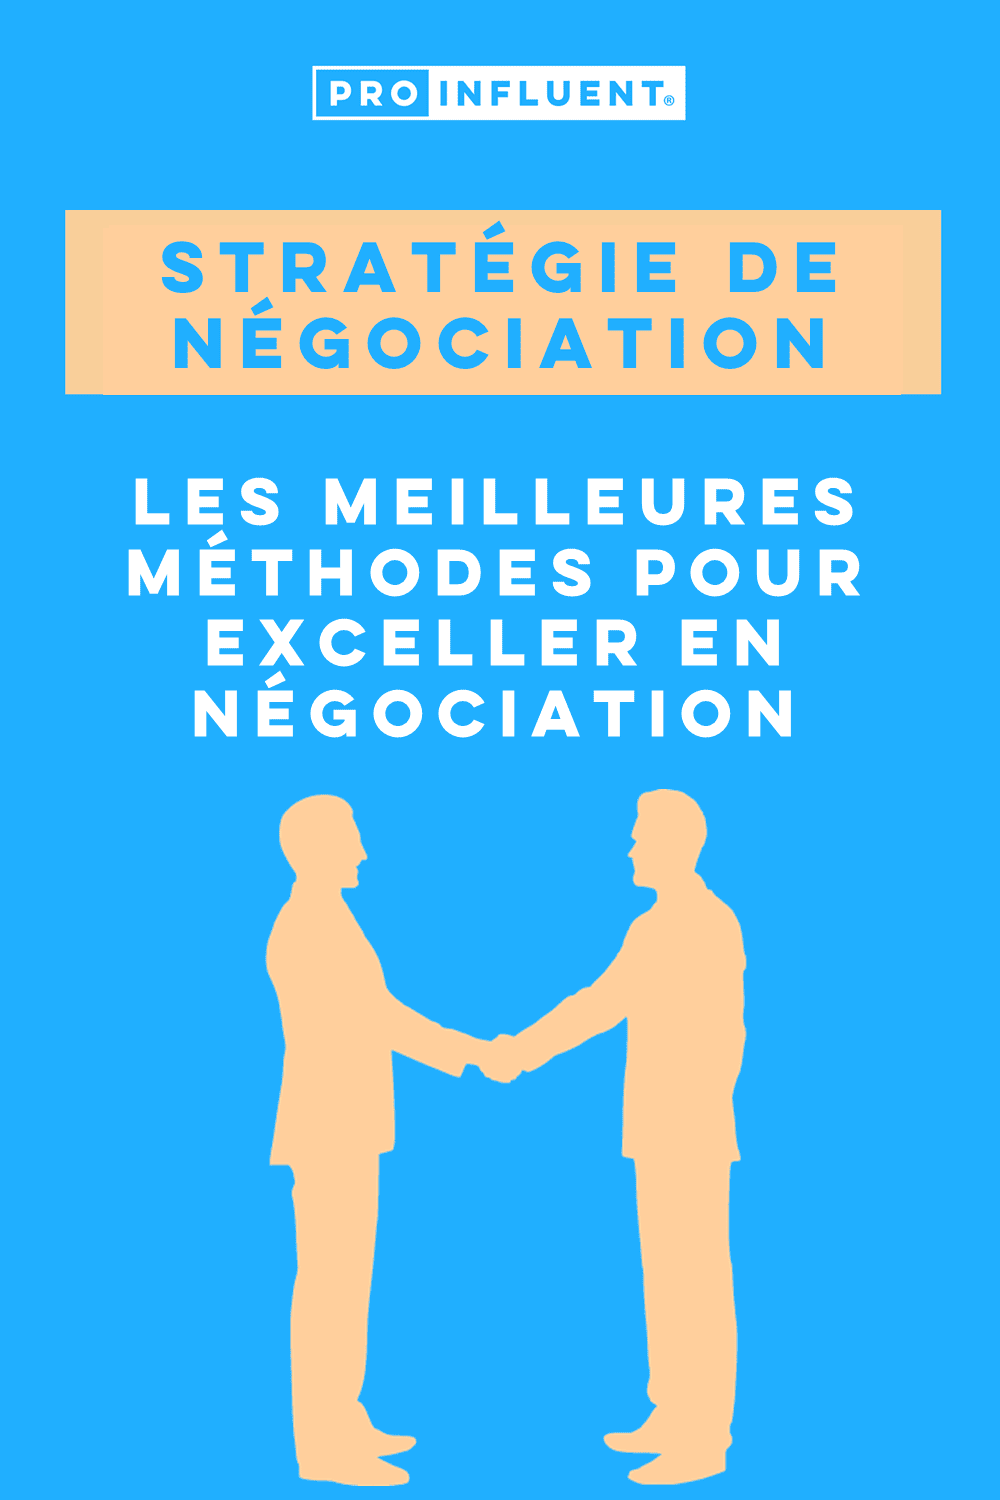 Strategia di negoziazione: i metodi migliori per eccellere nella negoziazione!